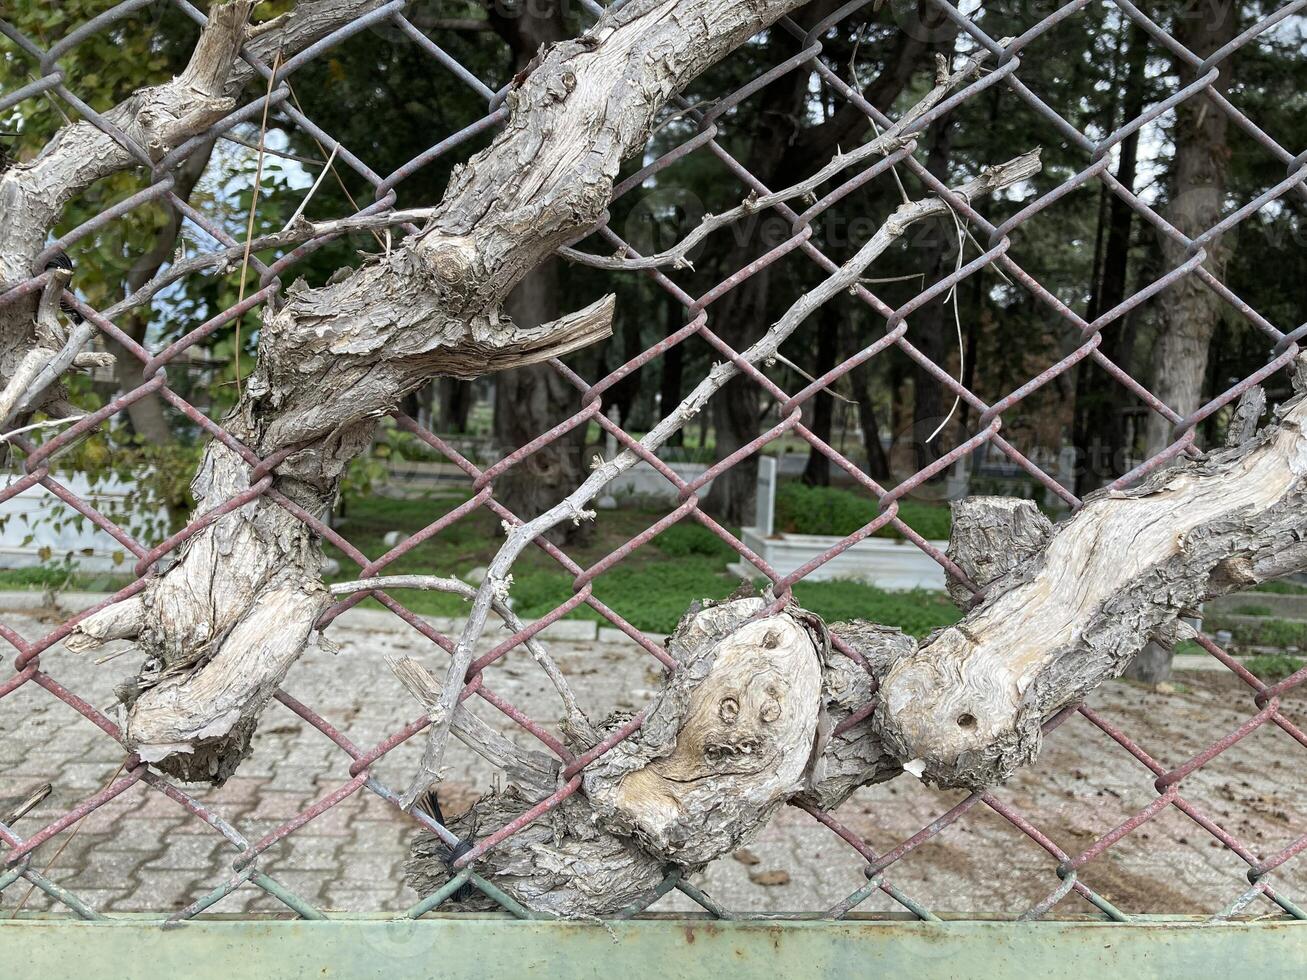 une arbre germé par le maillon de chaîne clôture de le vieux turc cimetière photo